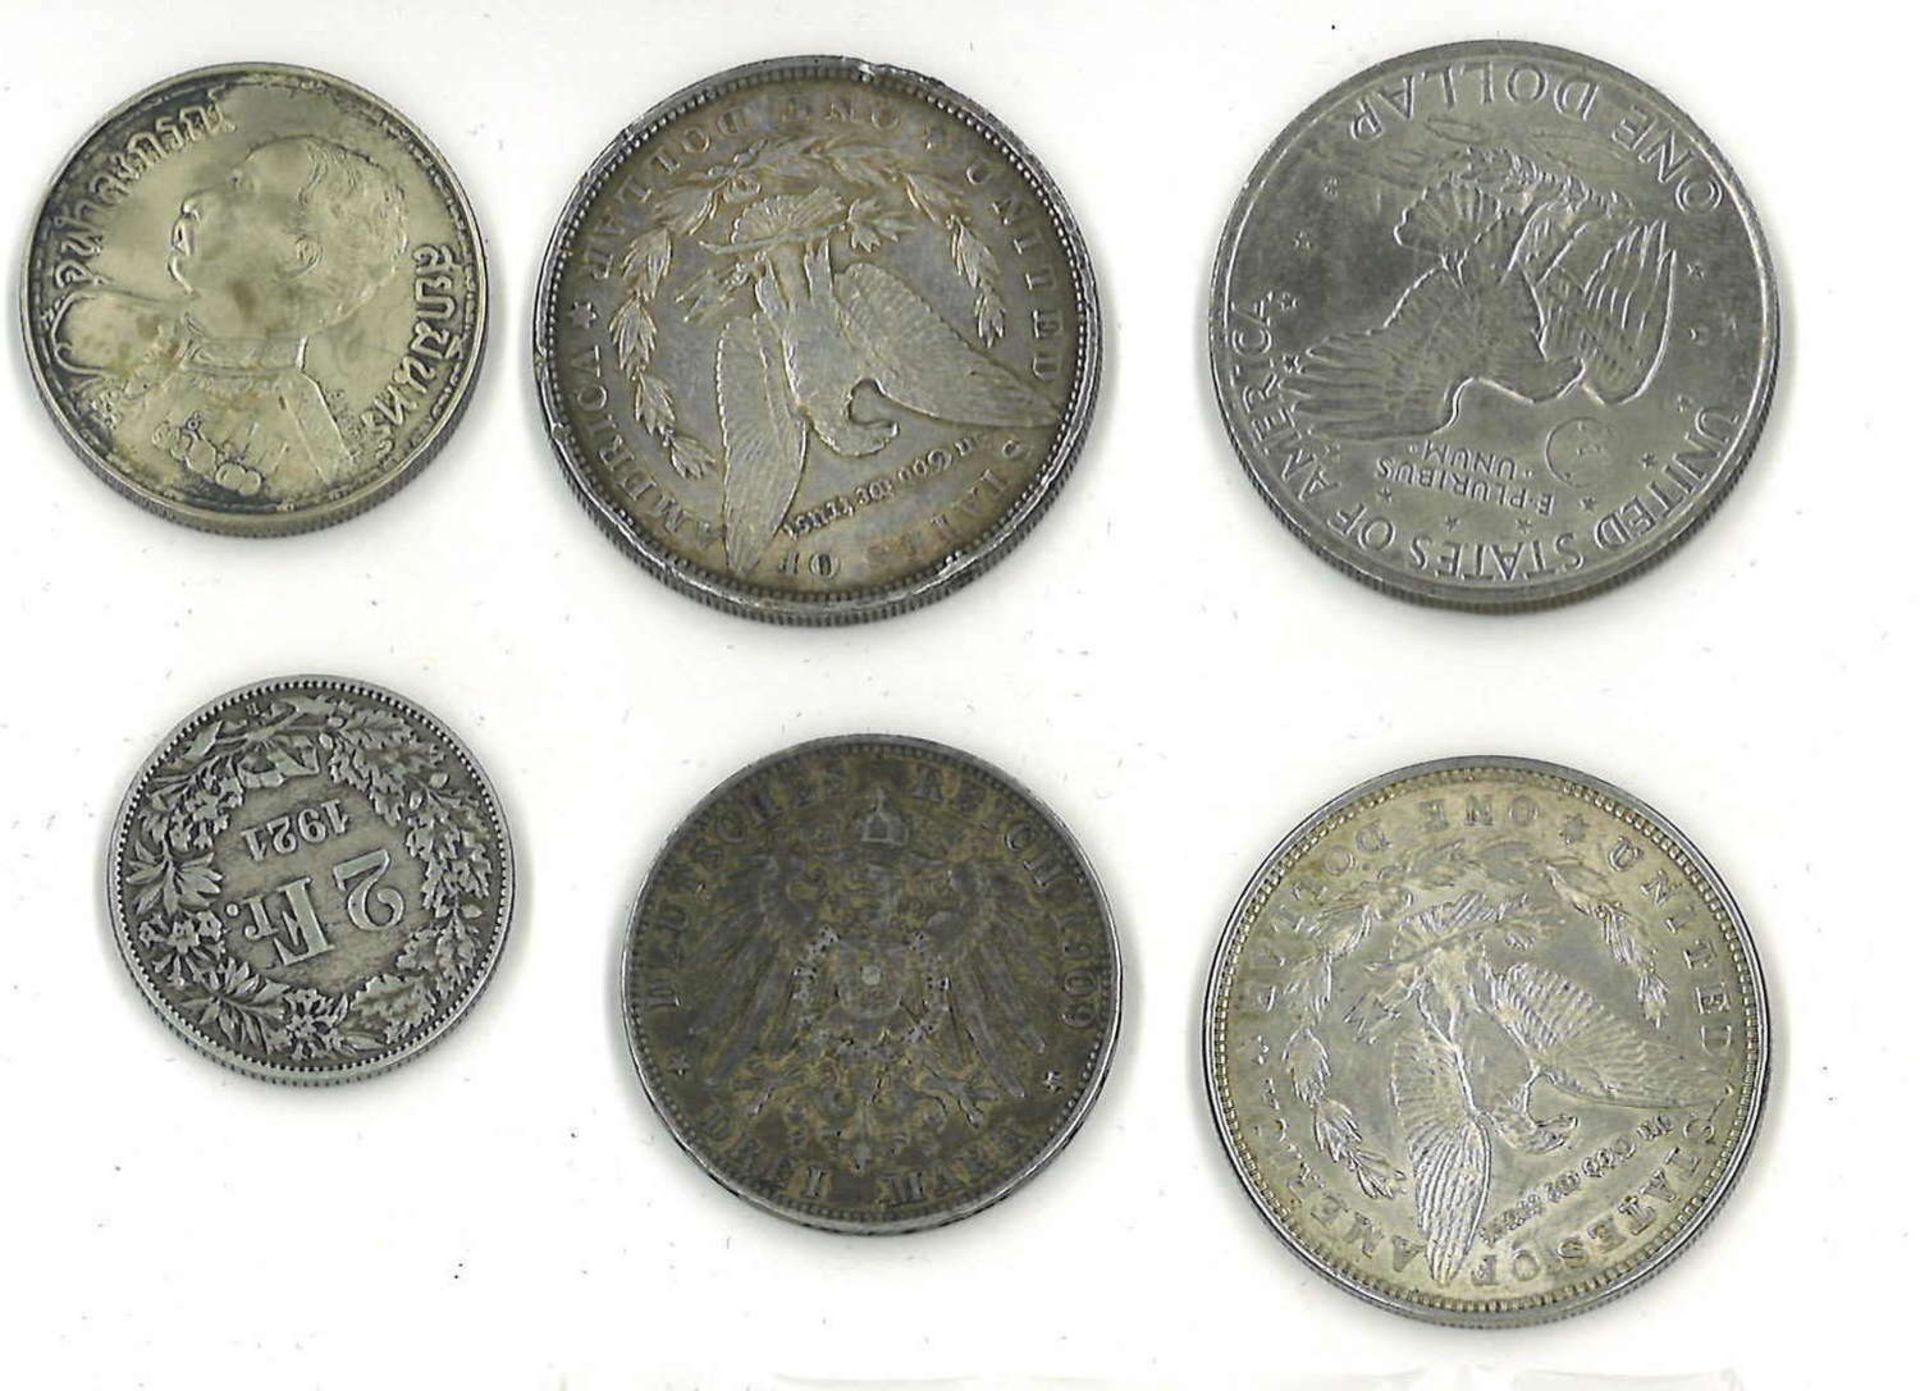 kleines Lot Münzen, dabei Silber, z.Bsp. 1 Dollar 1889, 1 Dollar 1921, 3 Mark Hamburg 1909, etc.